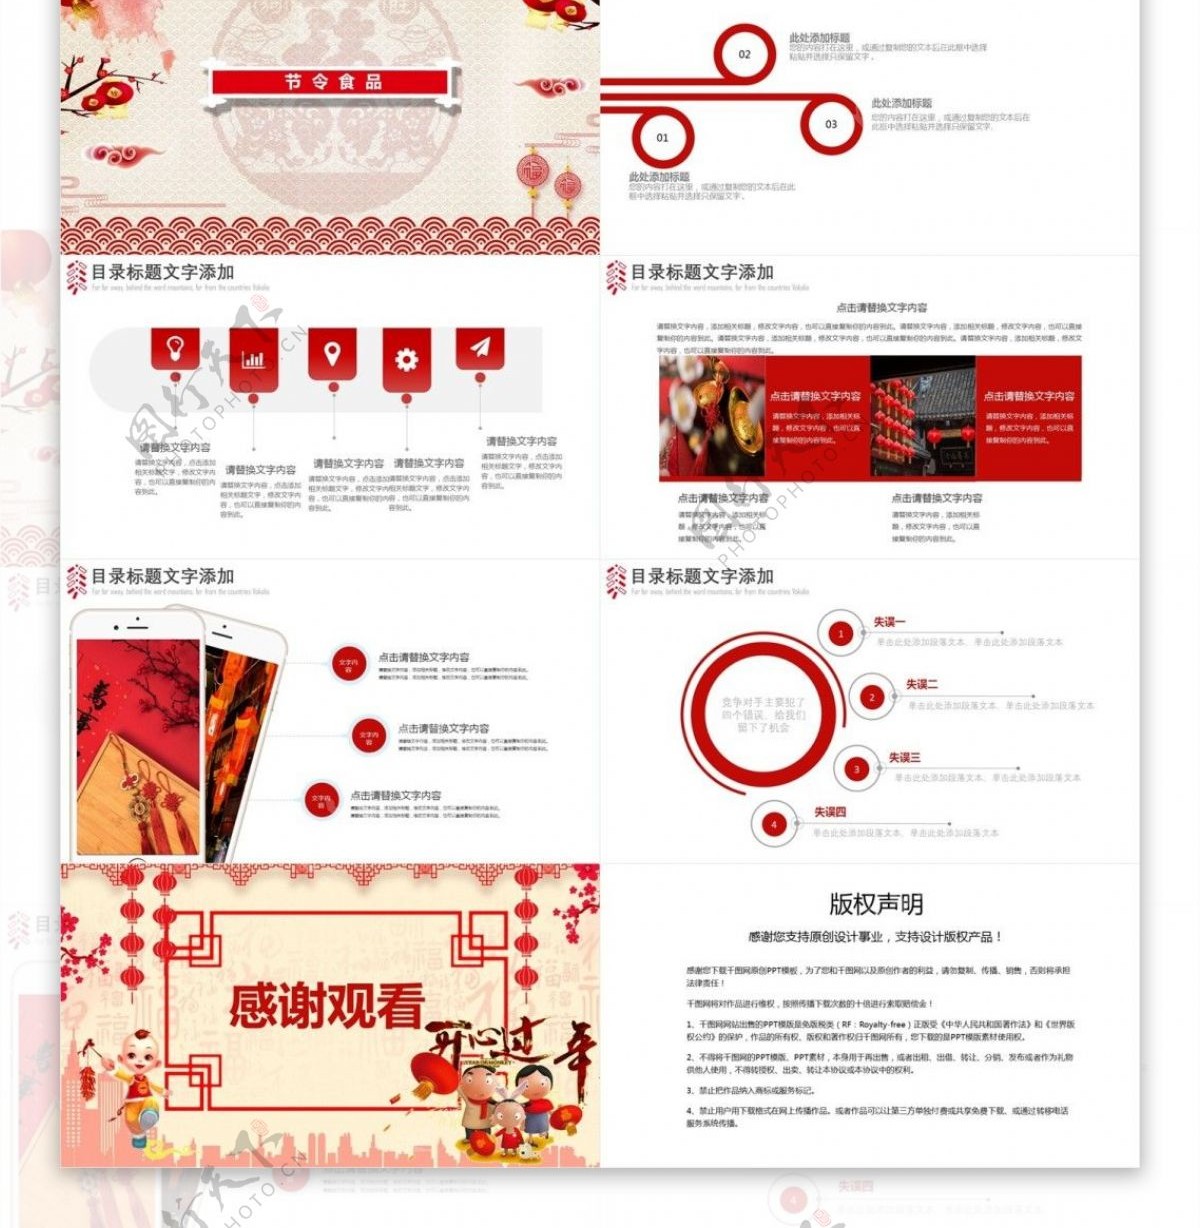 创意中国传统节小年节日庆典PPT模板